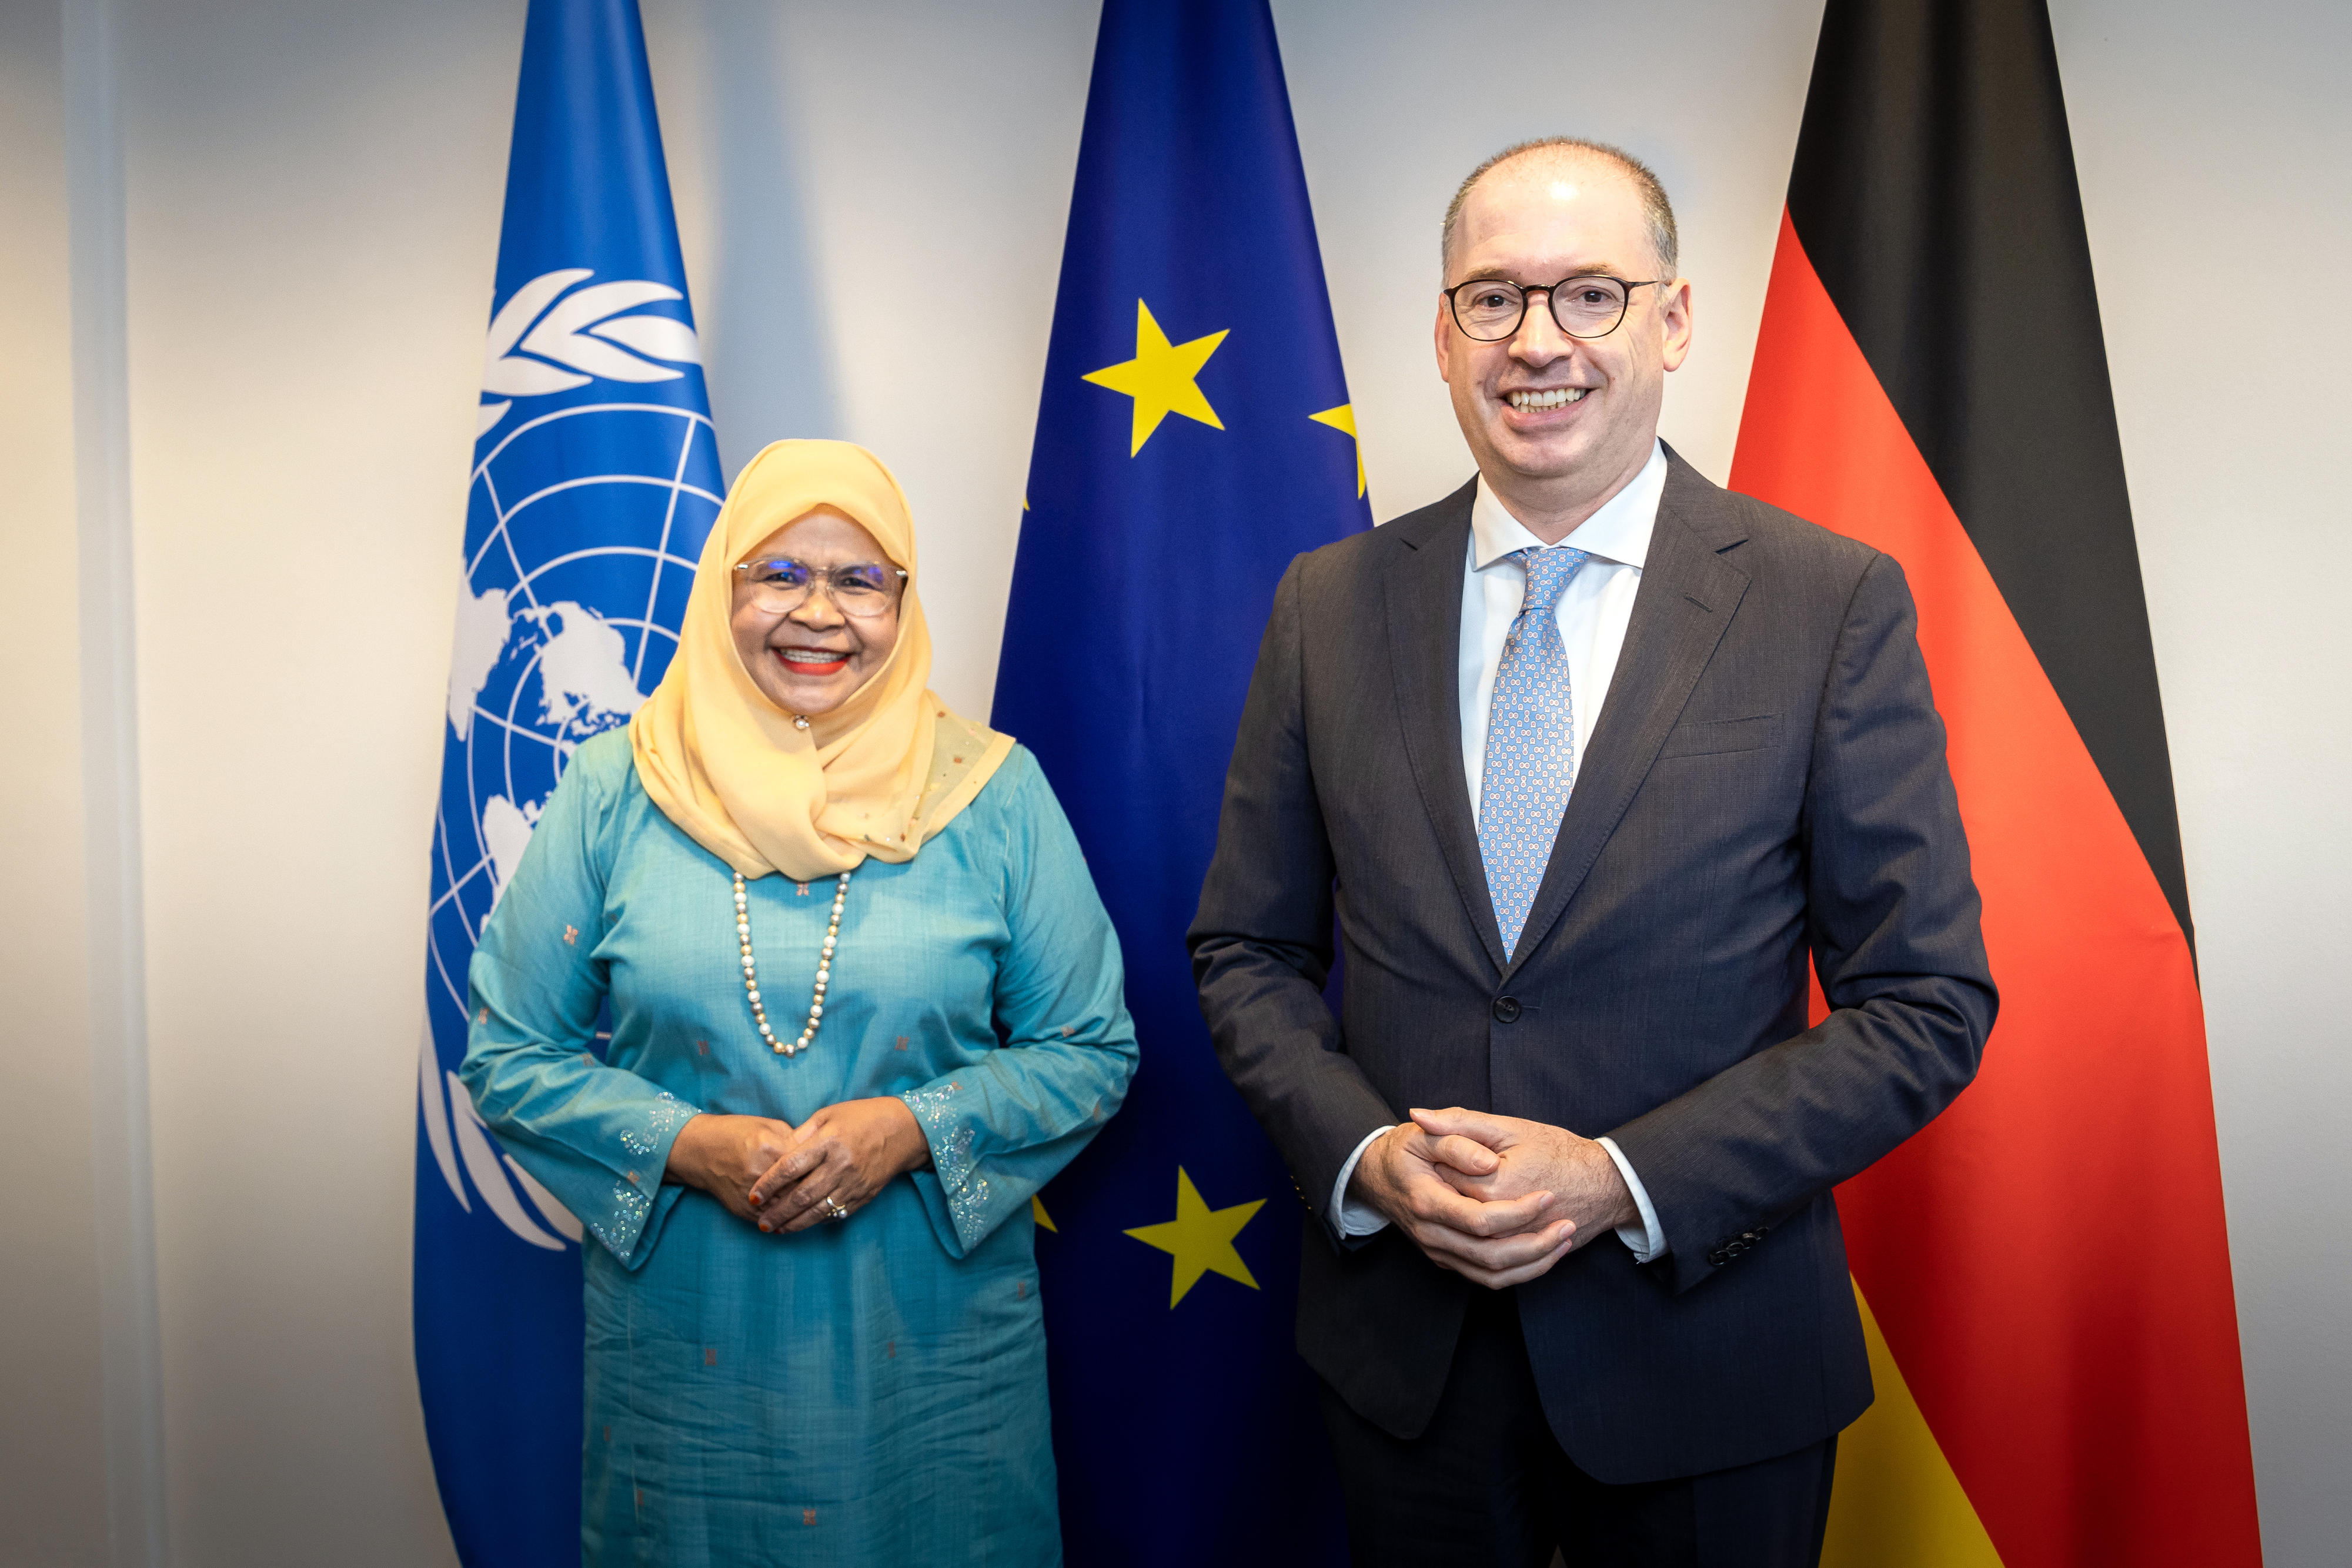 Der Parlamentarische Staatssekretär Nils Annen mit der Exekutivdirektion von UN-Habitat Maimunah Mohd Sharif in Berlin